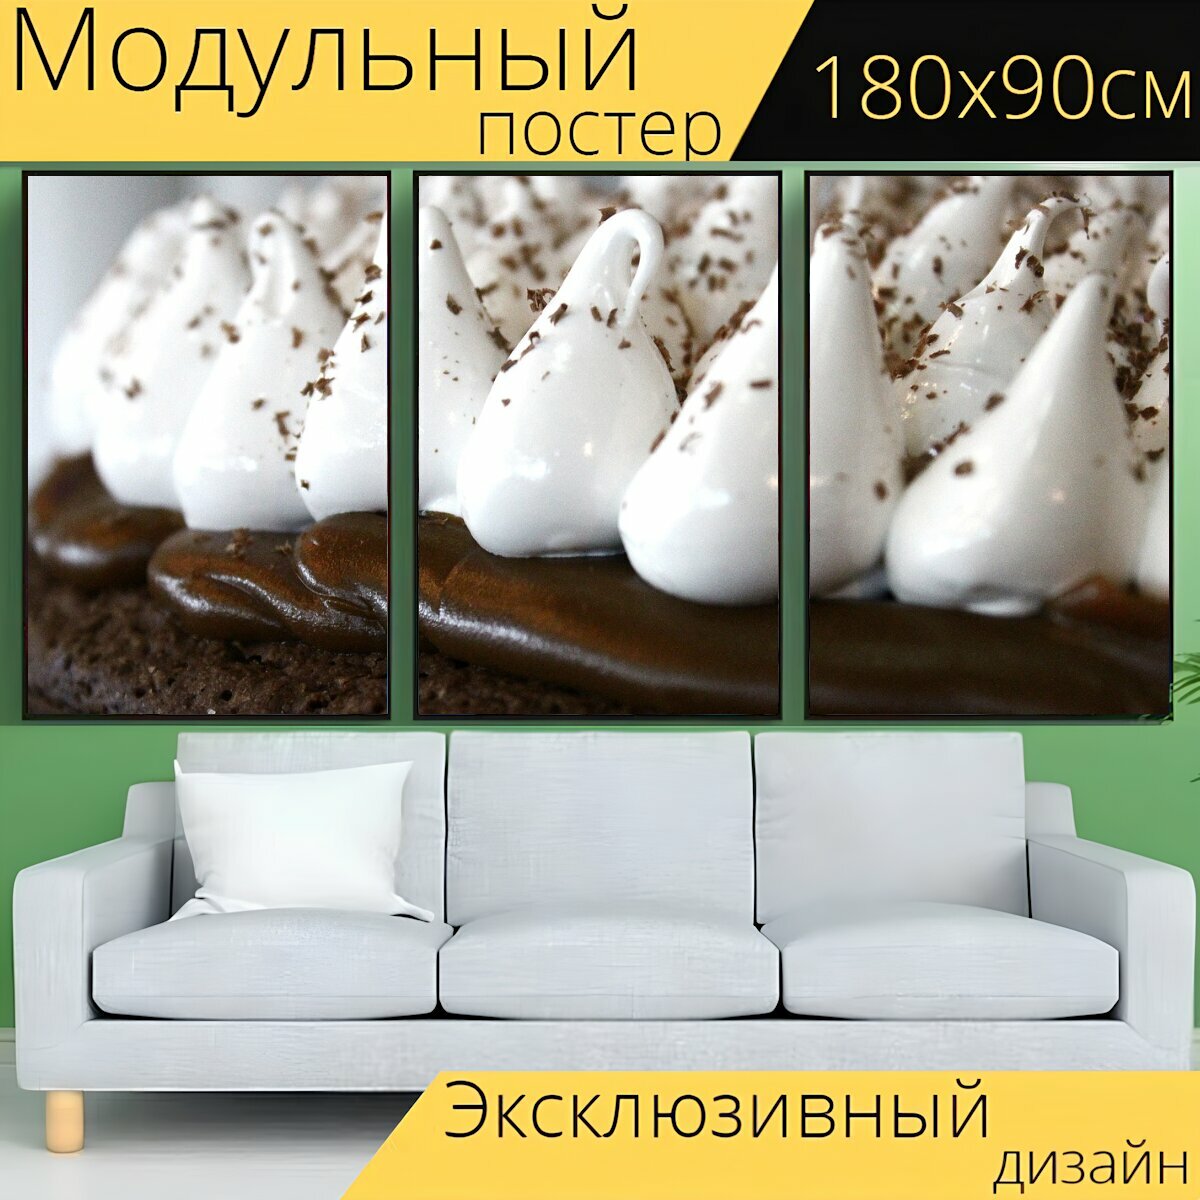 Модульный постер "Шоколад, крем, меренге" 180 x 90 см. для интерьера